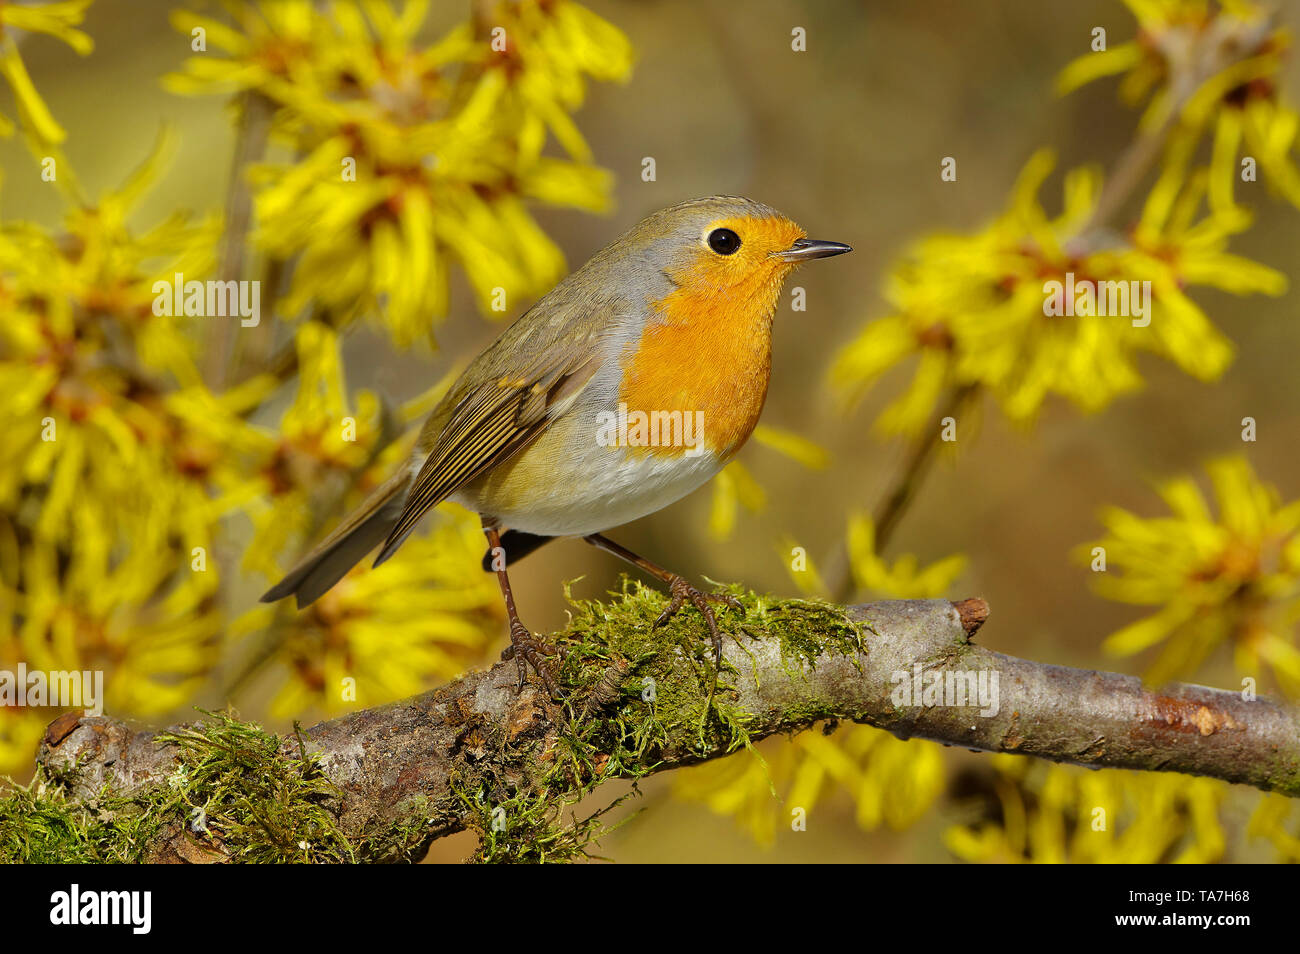 Robin (Erithacus rubecula aux abords). Perché sur une branche adultes, avec l'Hamamélis en arrière-plan. Allemagne Banque D'Images